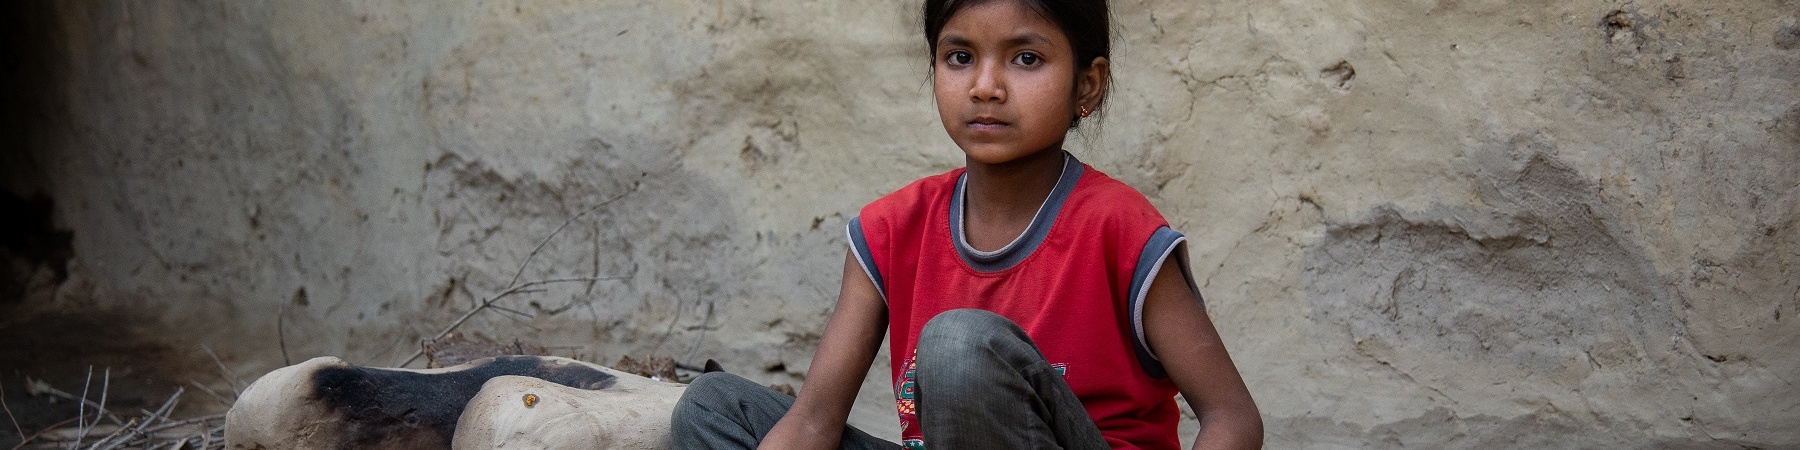 Bambina indiana seduta a terra tiene in mano un contenitore in corda con dentro il riso